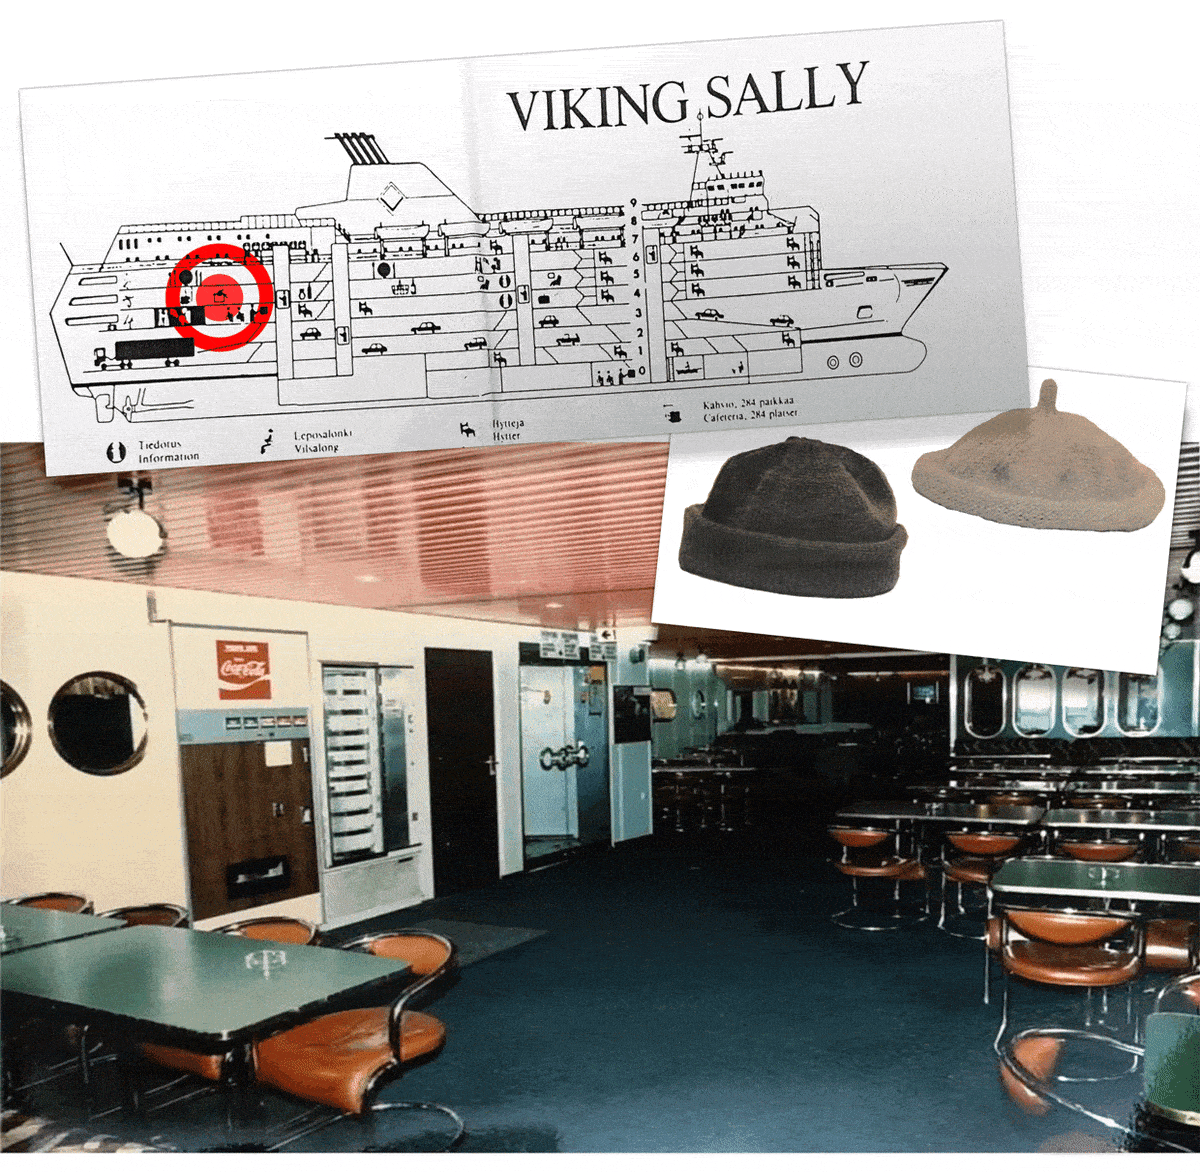 Laivan kartta ja valokuvat laivan kahviosta ja kahdesta myssystä.